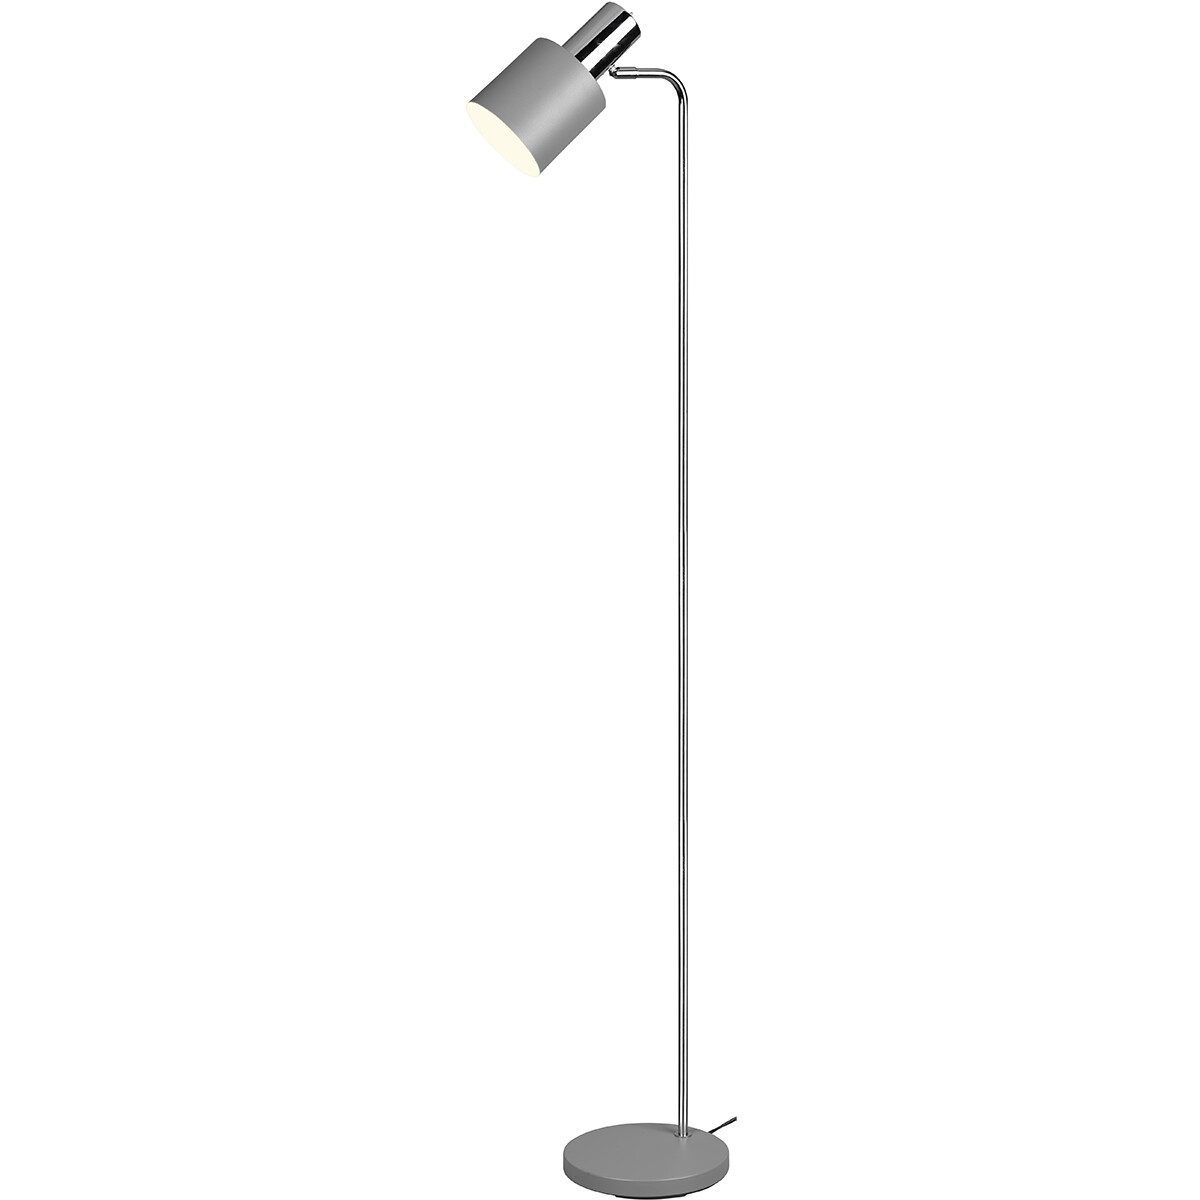 LED Vloerlamp - Vloerverlichting - Trion Alimo - E27 Fitting - Rond - Mat Grijs - Aluminium